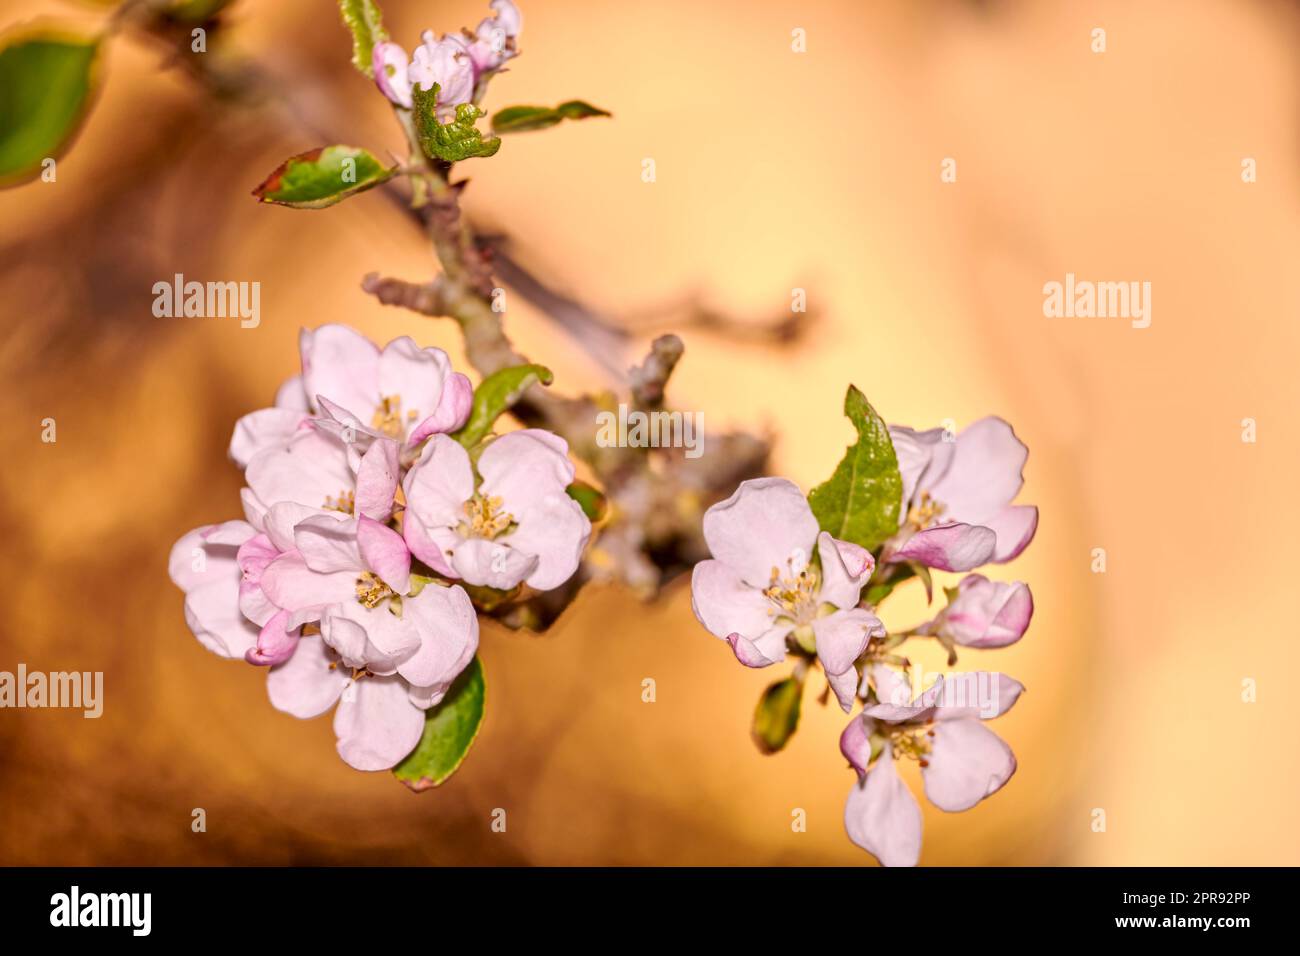 Landschaftsblick auf wunderschöne, isolierte Blumen im Fokus. Blüht von einem Baum im Freien. Die Sonne scheint auf eine fokussierte rosa Blumengruppe mit grünen Blättern, die aus einem Baumstamm außerhalb der Natur wachsen. Stockfoto